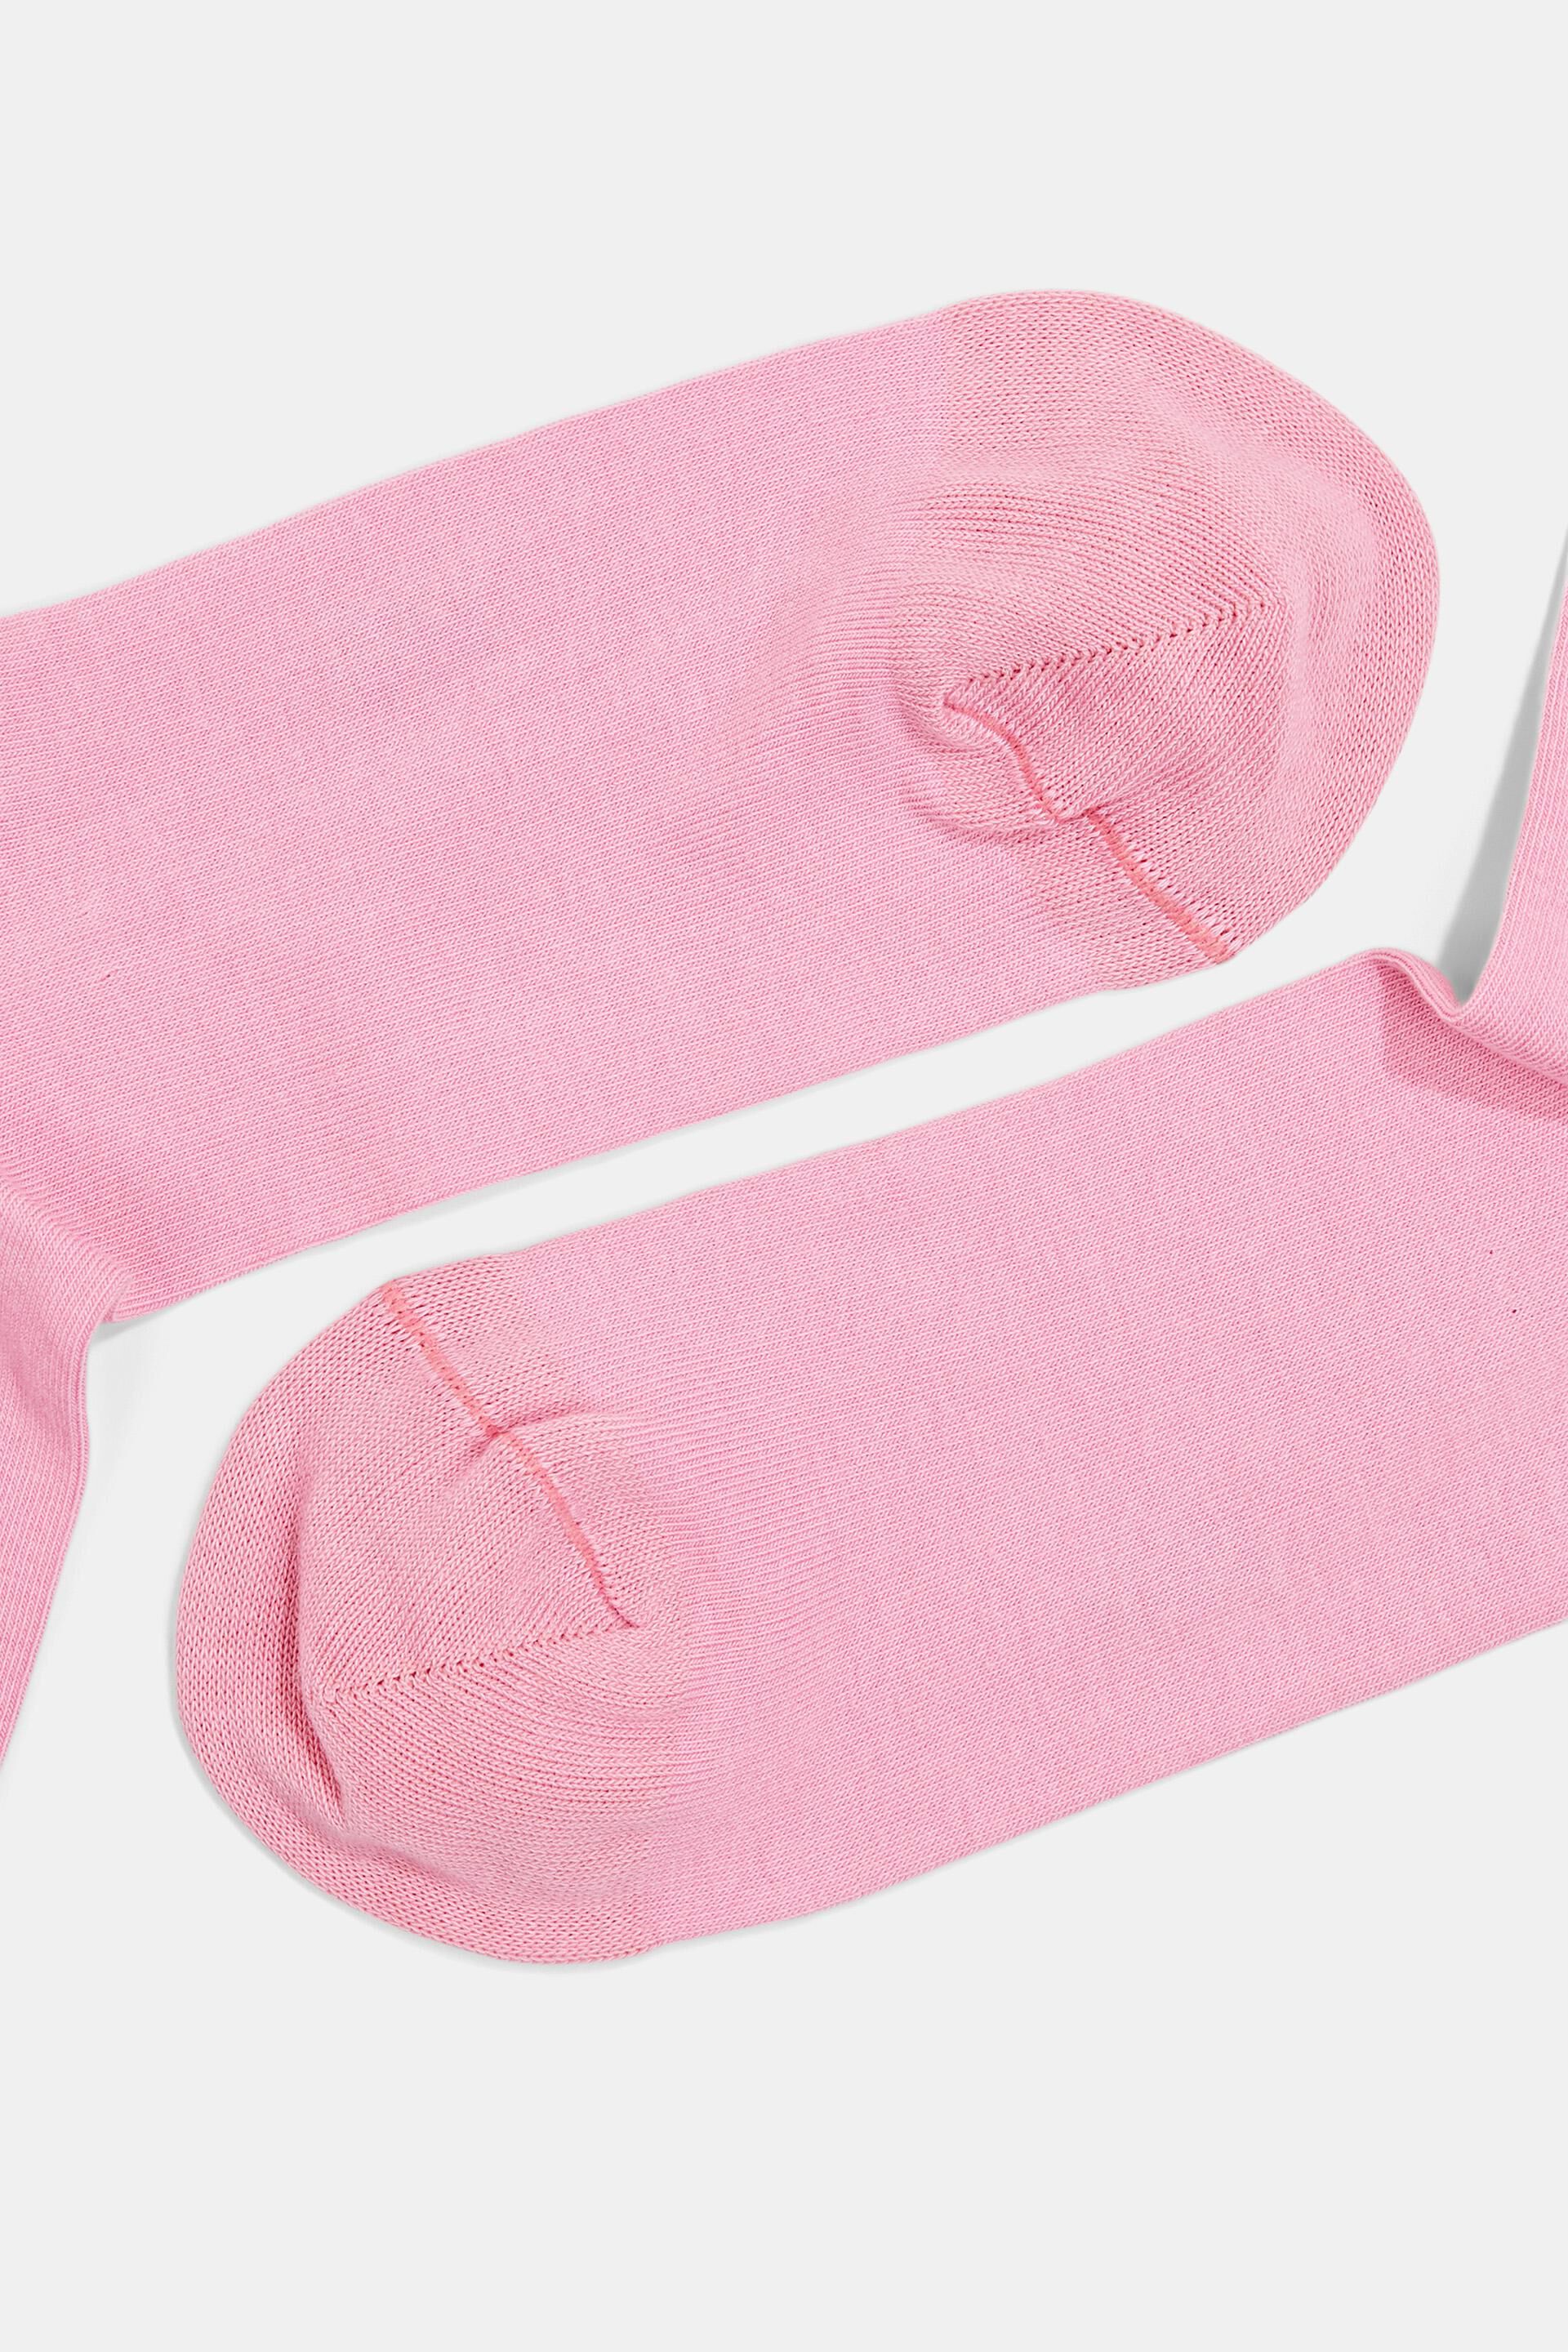 Esprit Online Store 2er-Pack Socken mit Rollkanten, Bio-Baumwolle